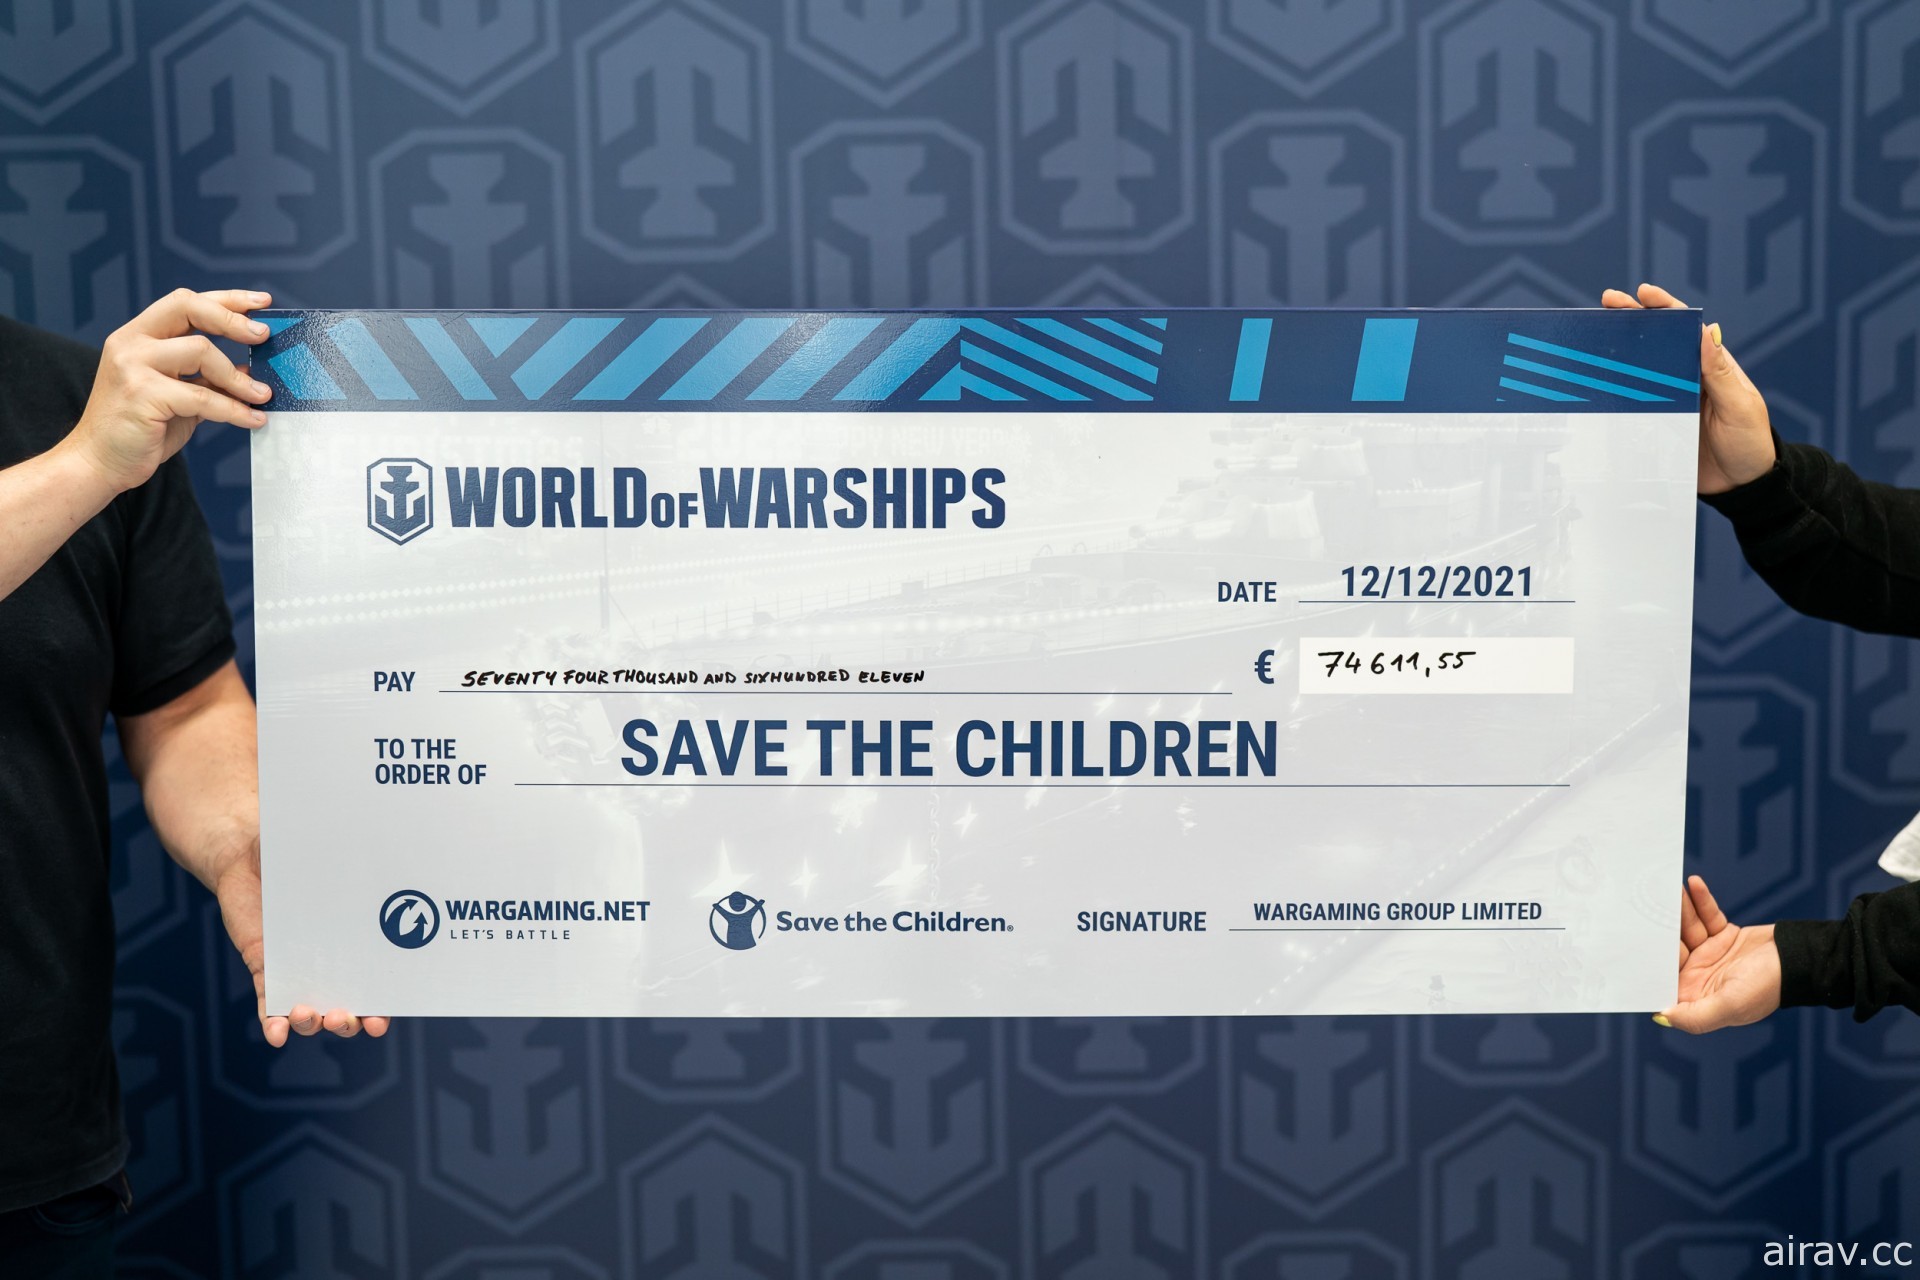 《戰艦世界》慈善直播募資新台幣 360 萬元 將全數捐贈給「救助兒童會」